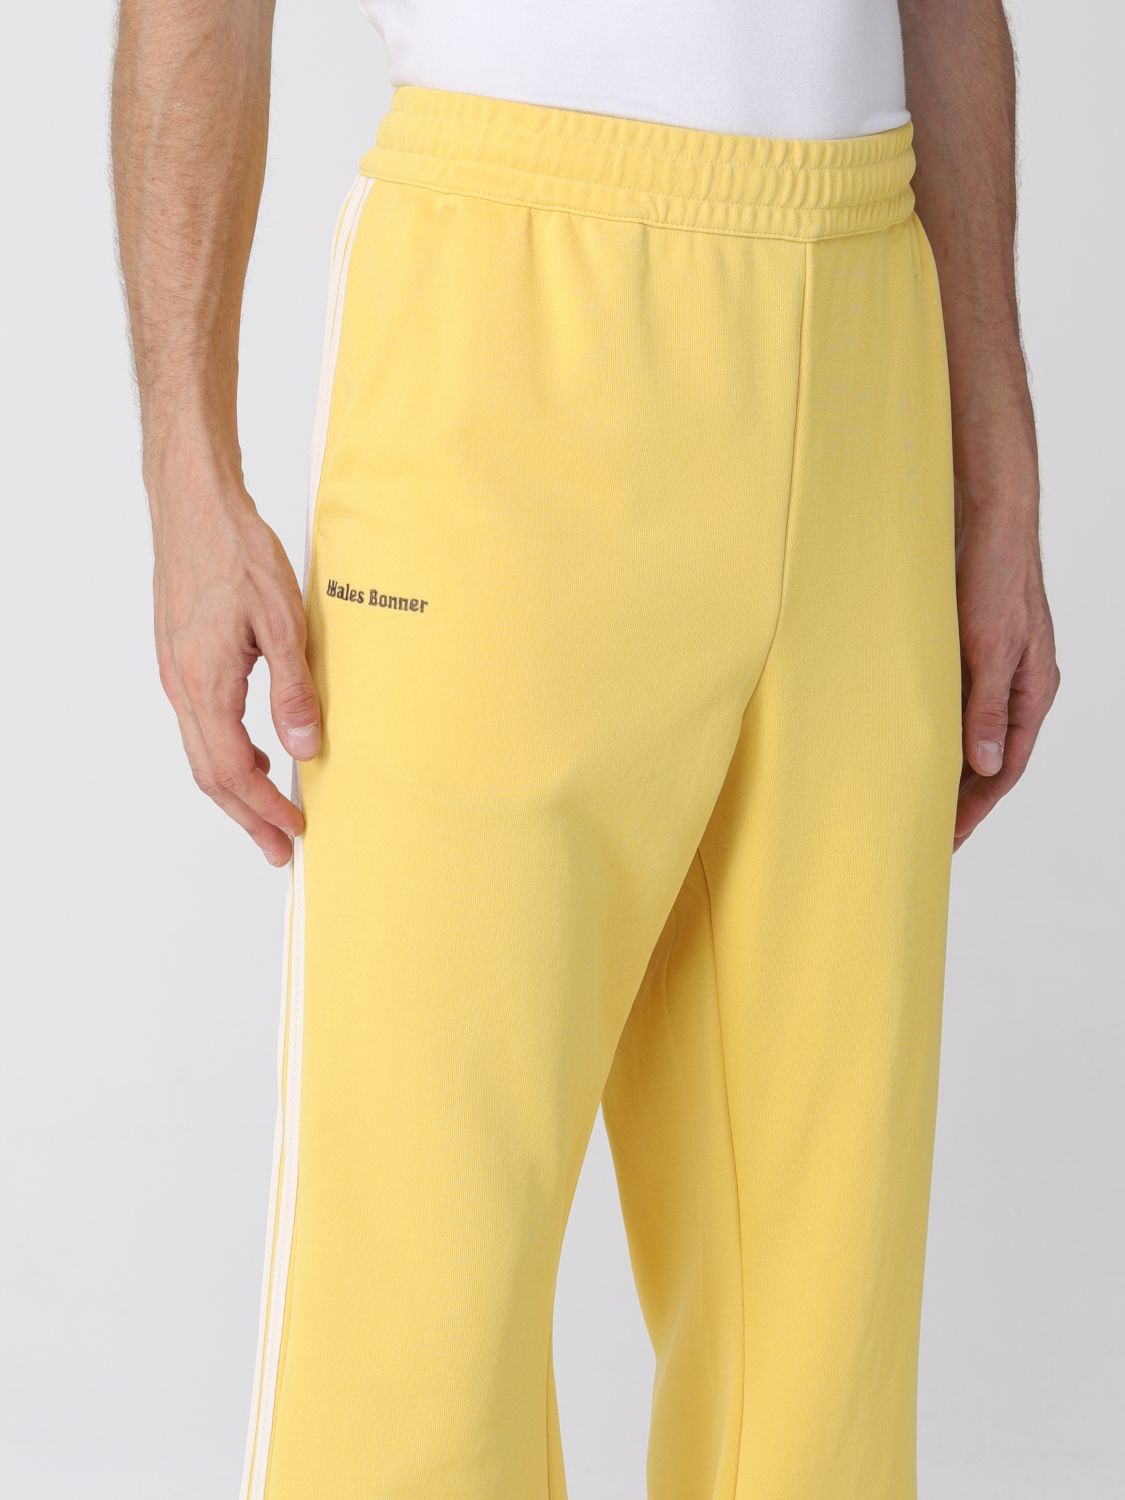 ADIDAS ORIGINALS BY WALES BONNER: Pants men - Yellow | Pants Adidas ...